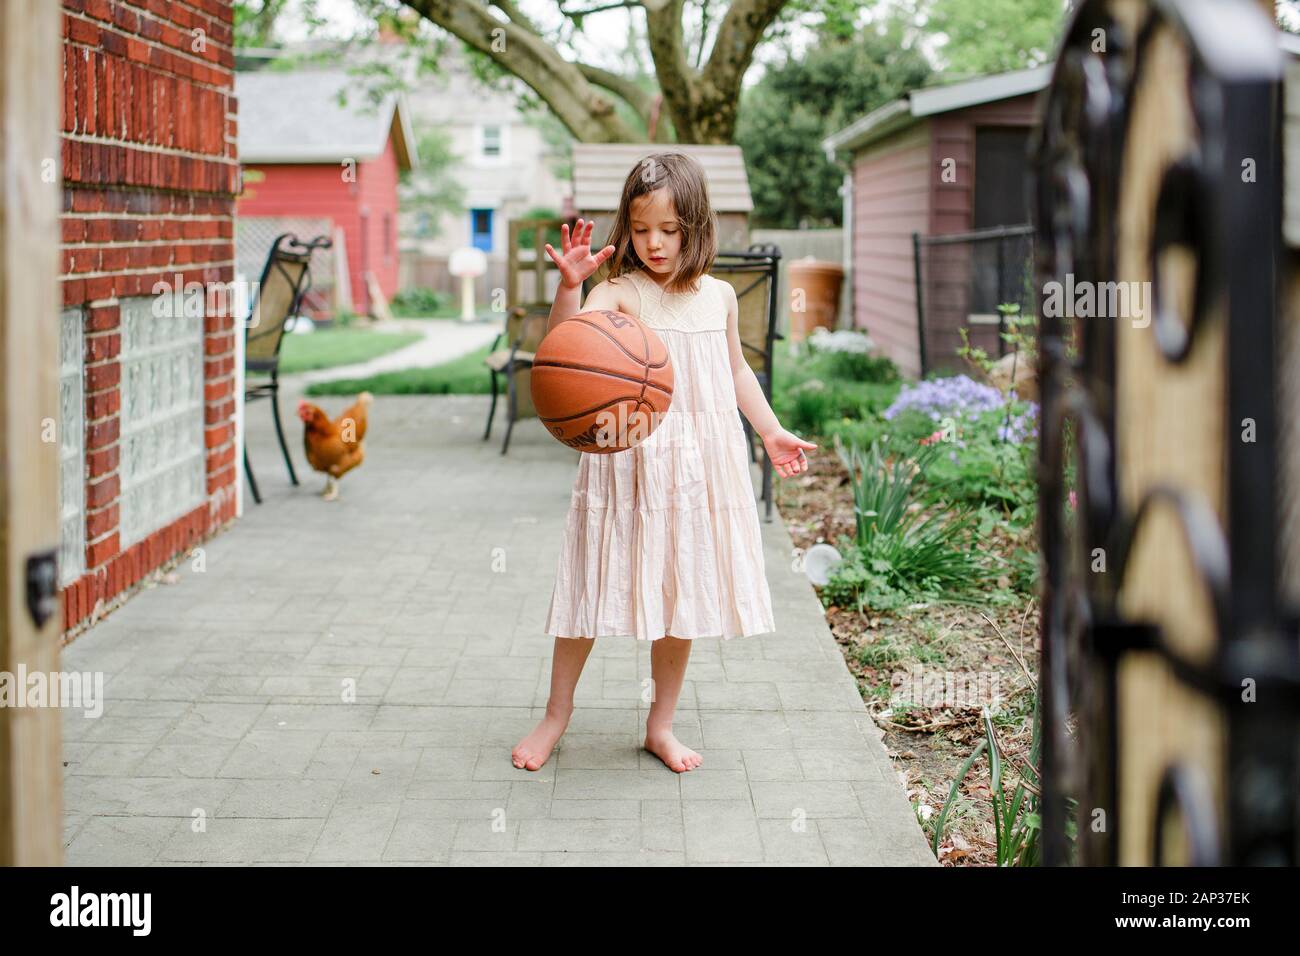 Une fille se tient avec un ballon de basket-ball mi-dribble avec du poulet derrière elle Banque D'Images